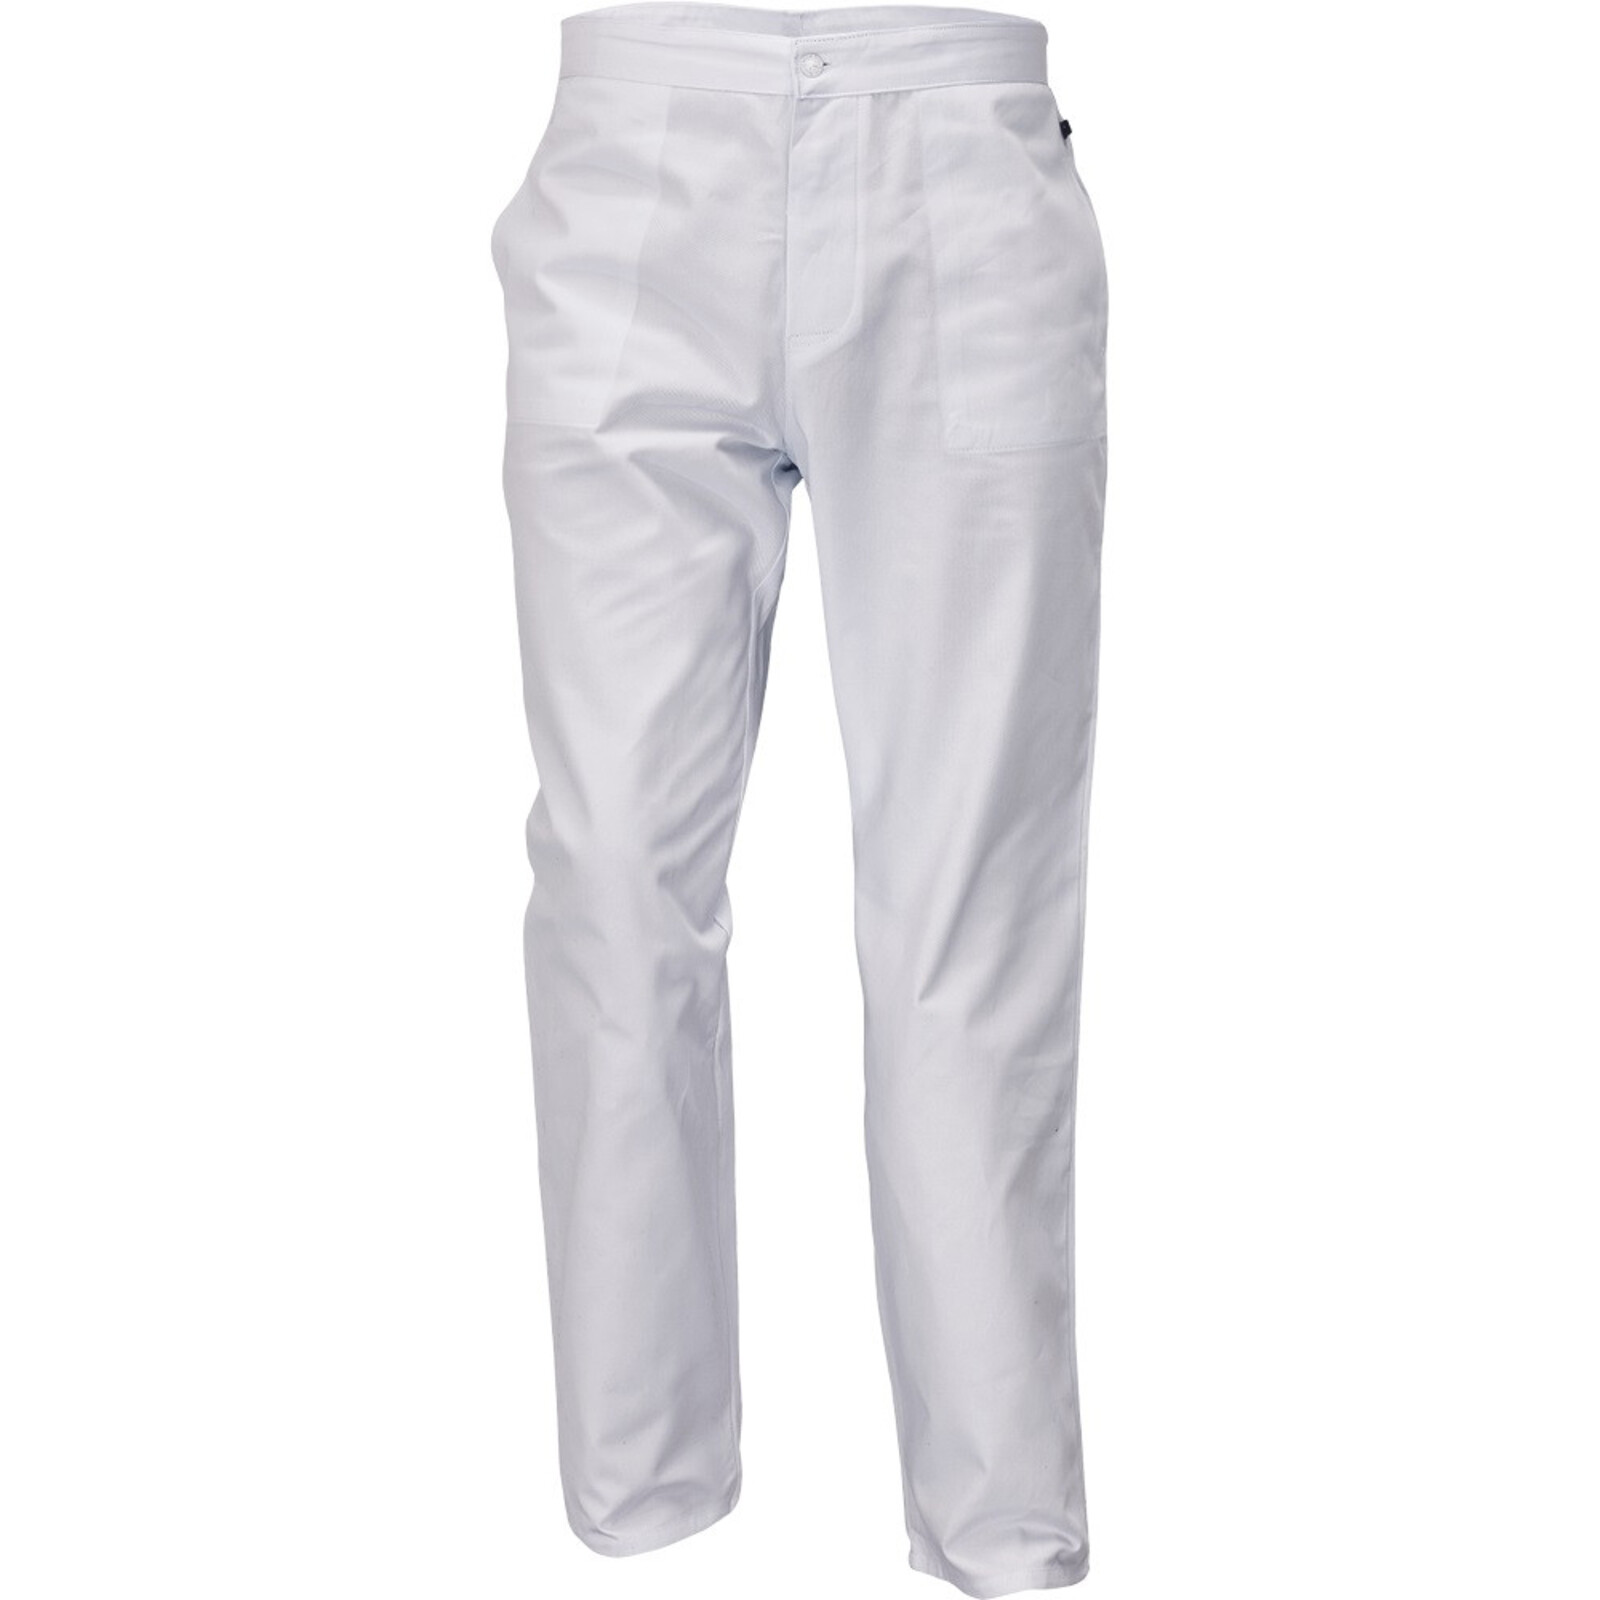 Pánske biele nohavice Apus Man - veľkosť: 54